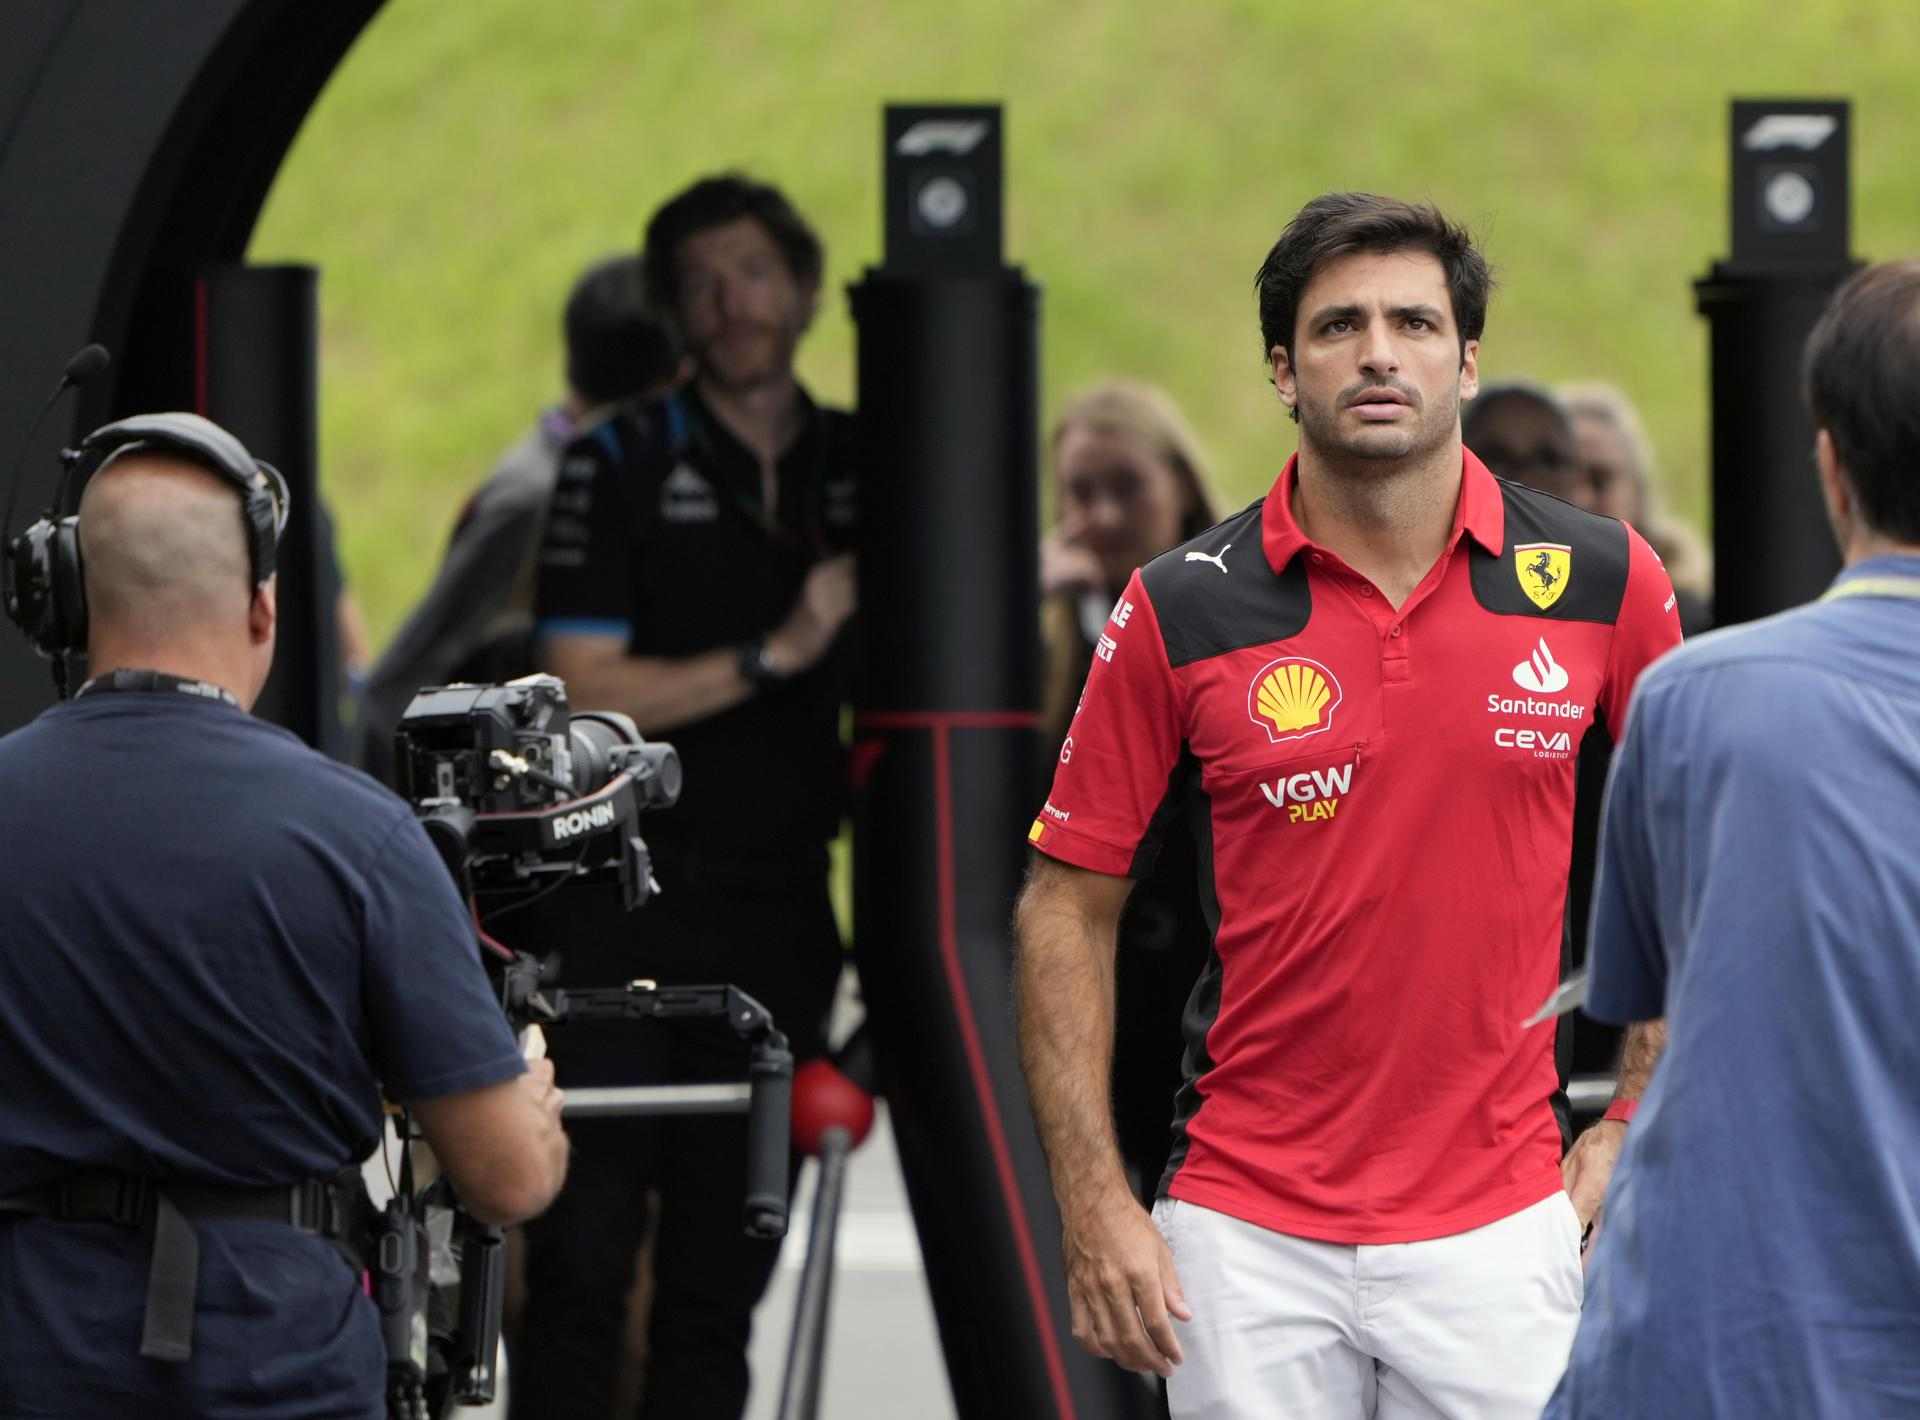 1 nombre puede dejar a Carlos Sainz fuera, si dice "sí", Ferrari lo firma